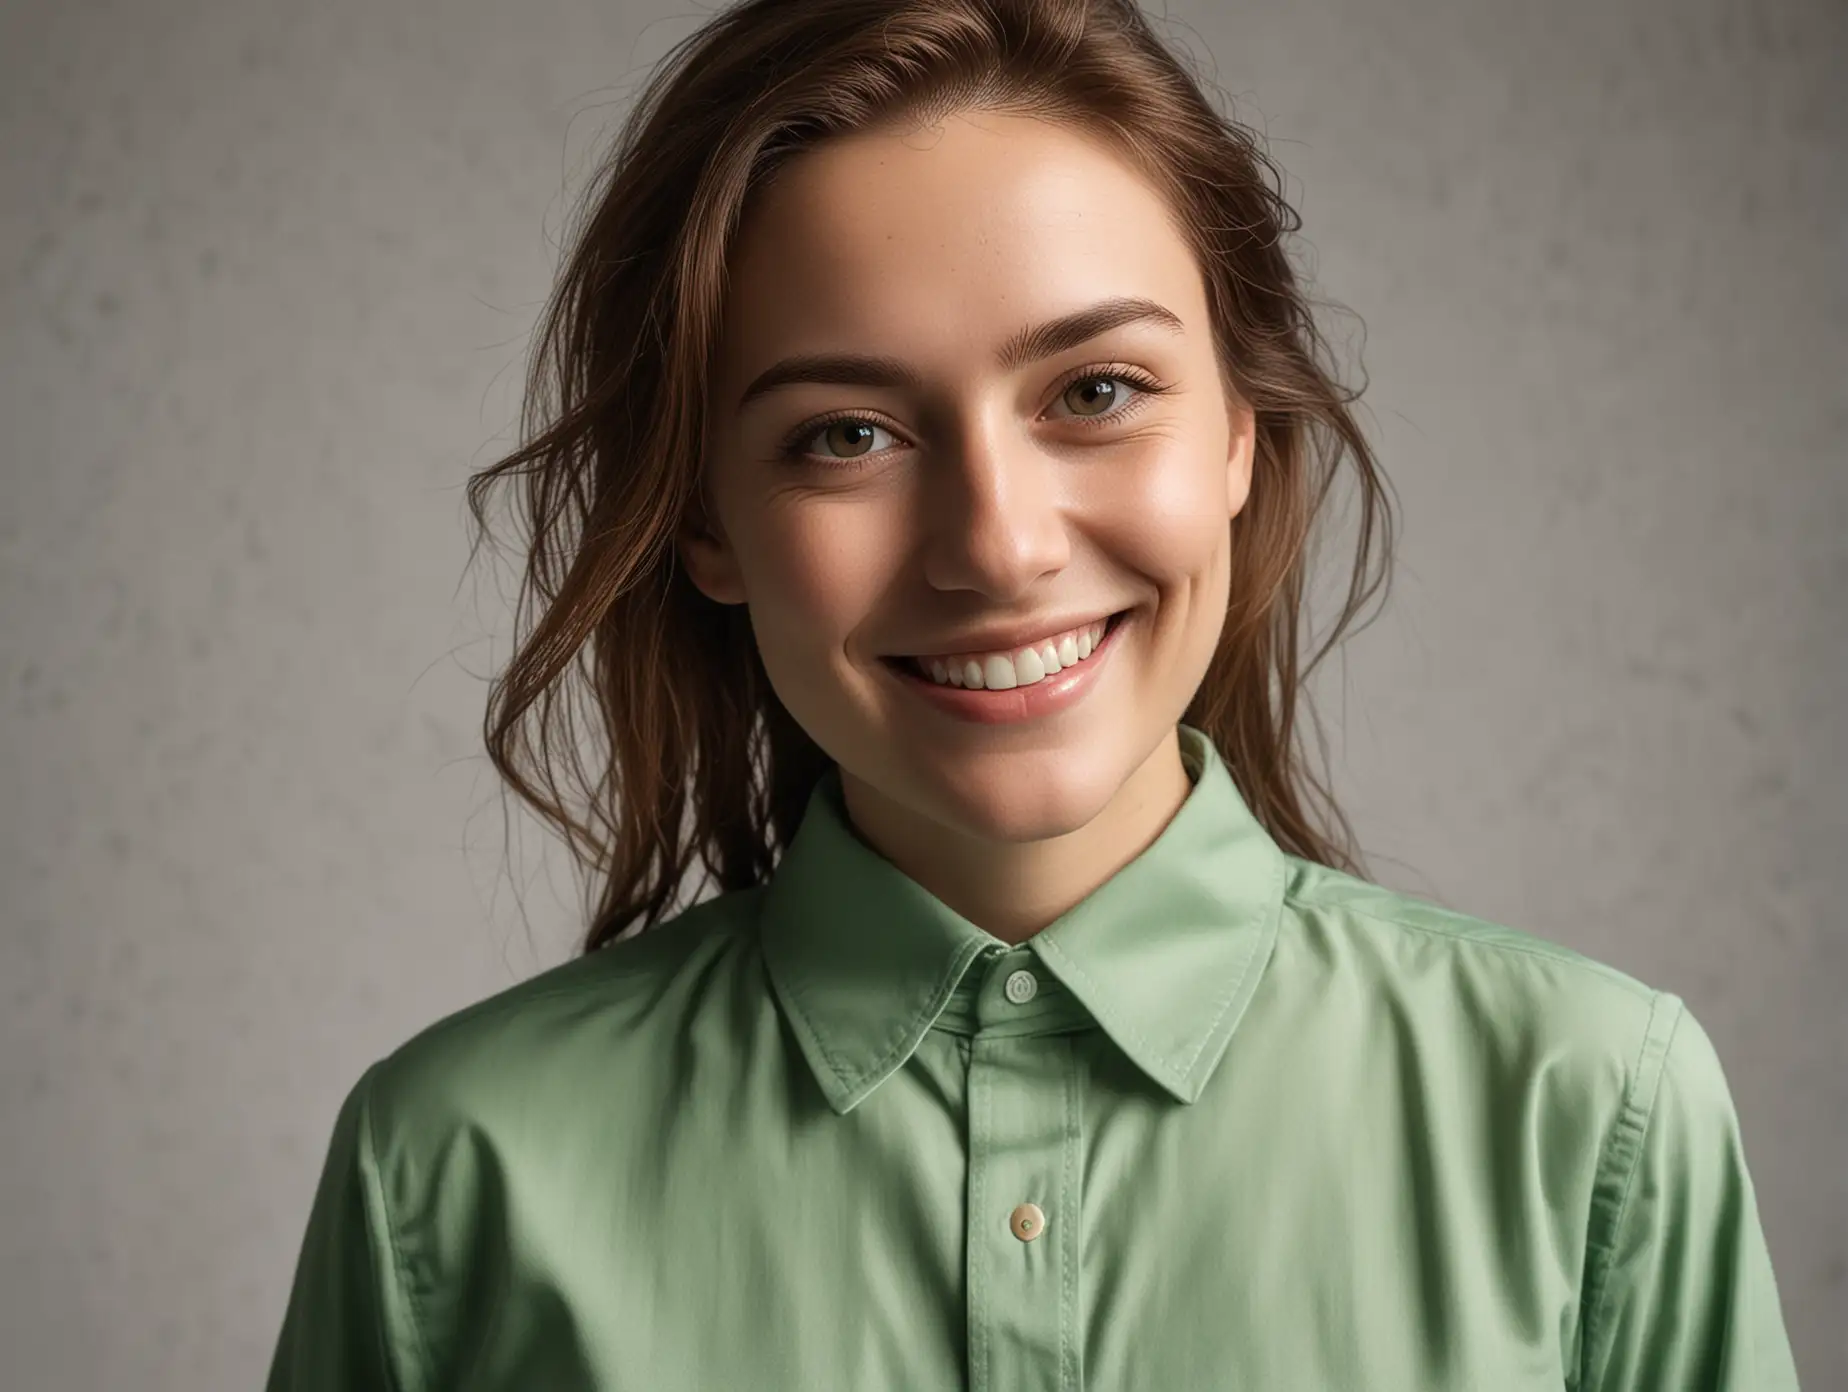 portrait moderne léger sourire en très fine porcelaine verte chemise

